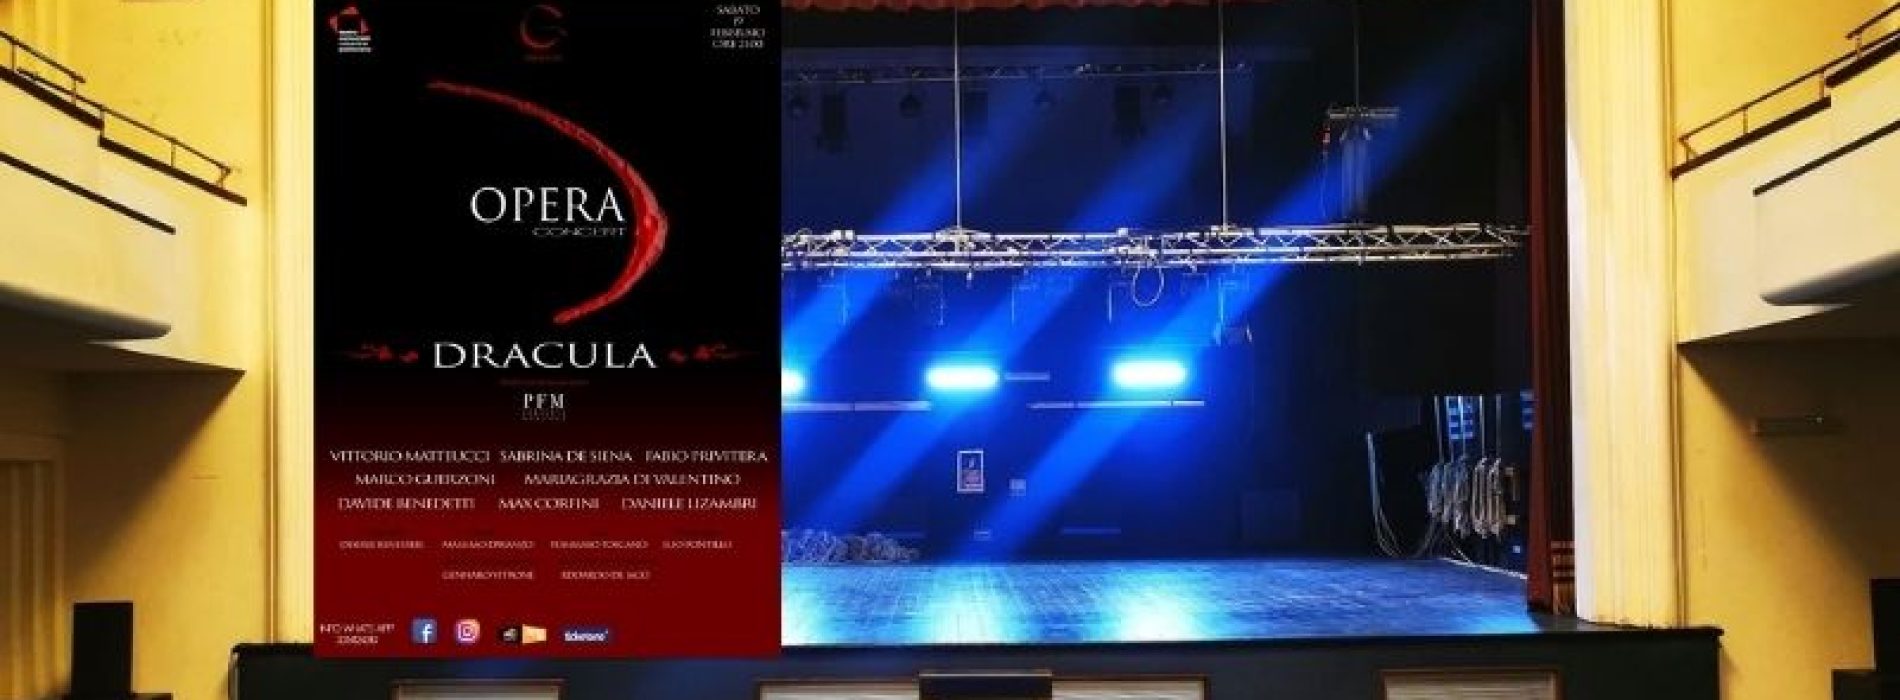 Unica data al Comunale, va in scena il Dracula Opera Concert